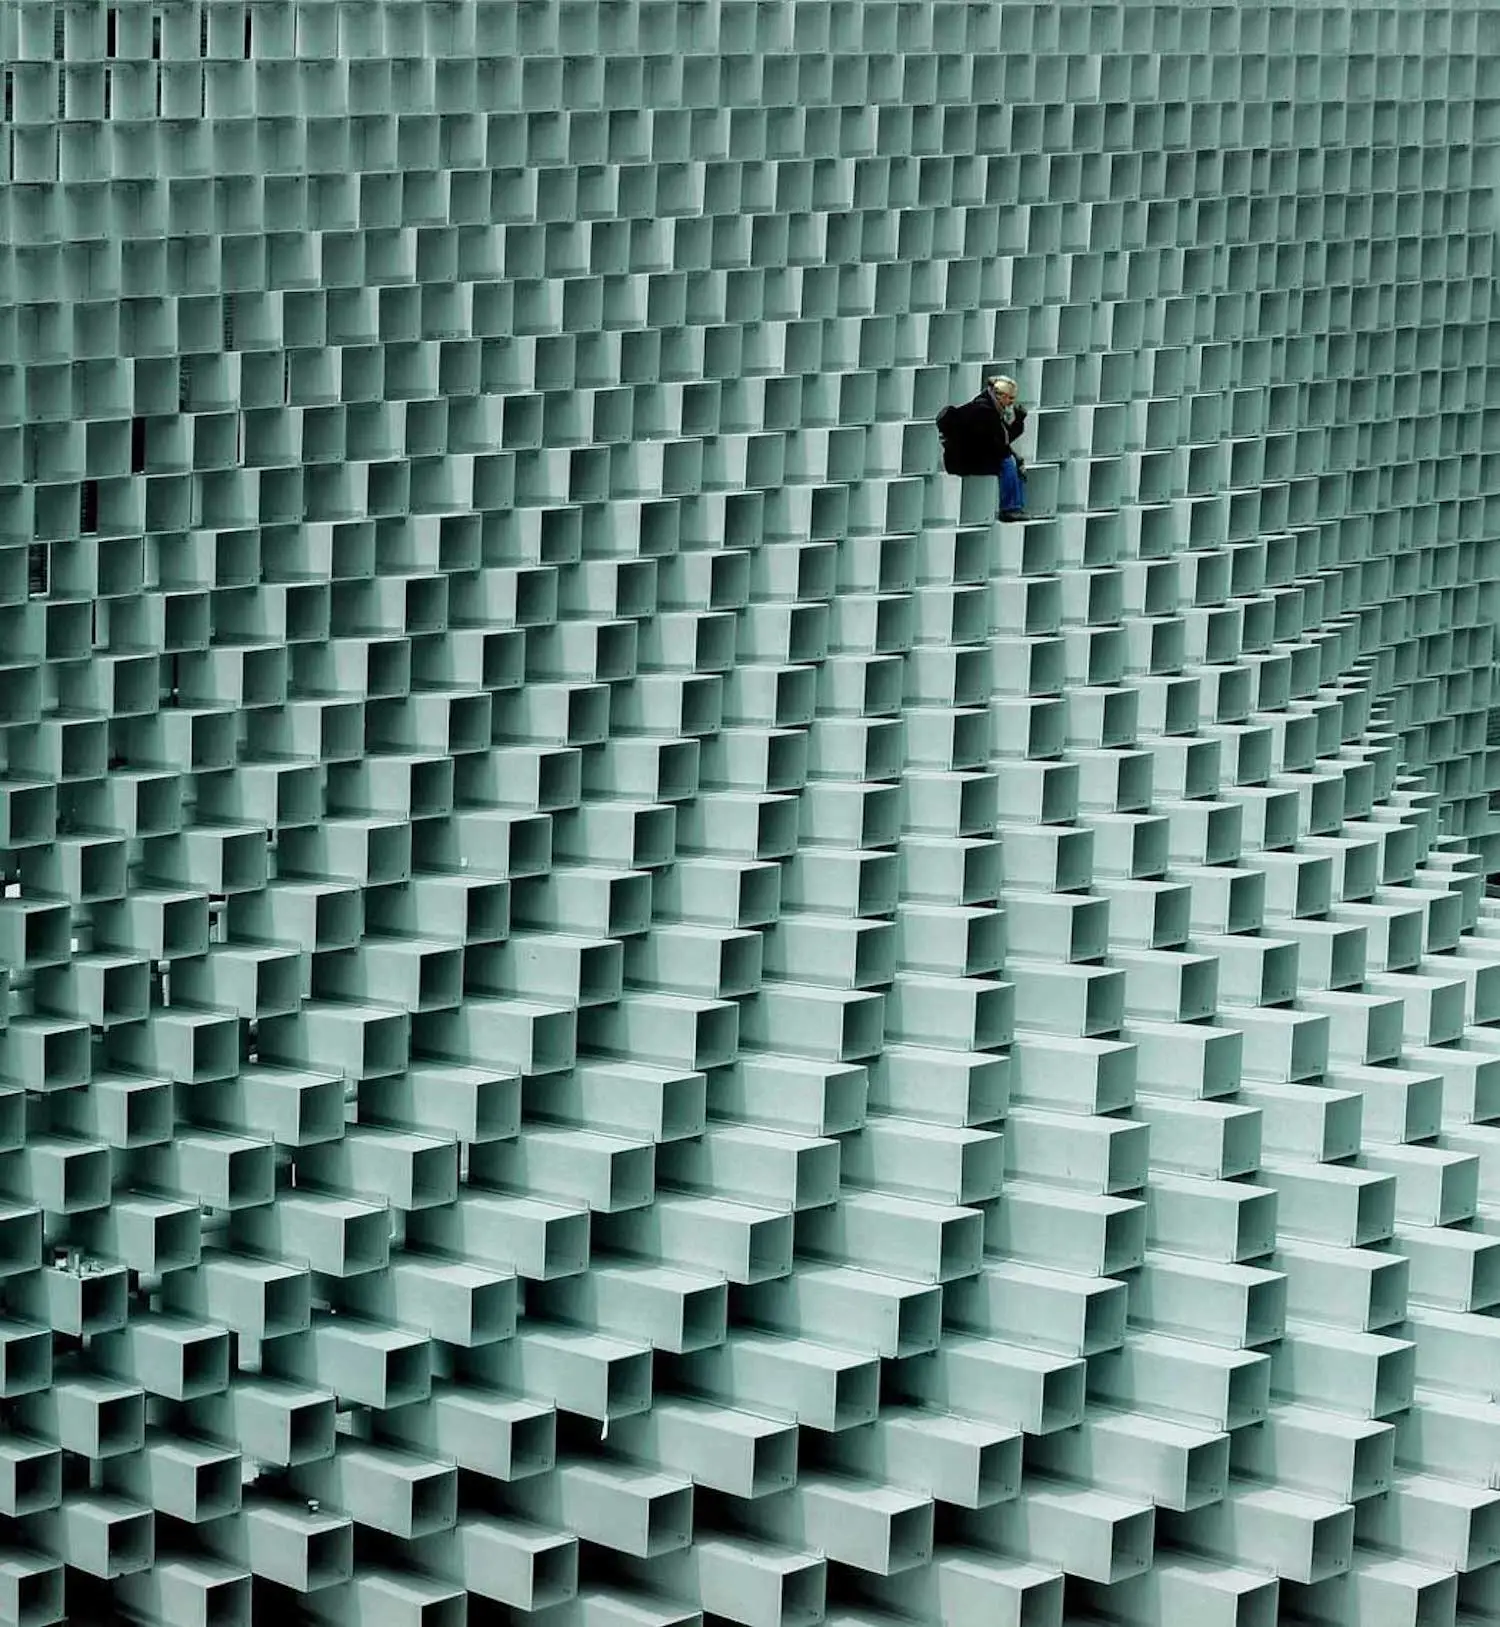 Photographie d'un ouvrier sur un bâtiment fait de prismes rectangulaires blancs